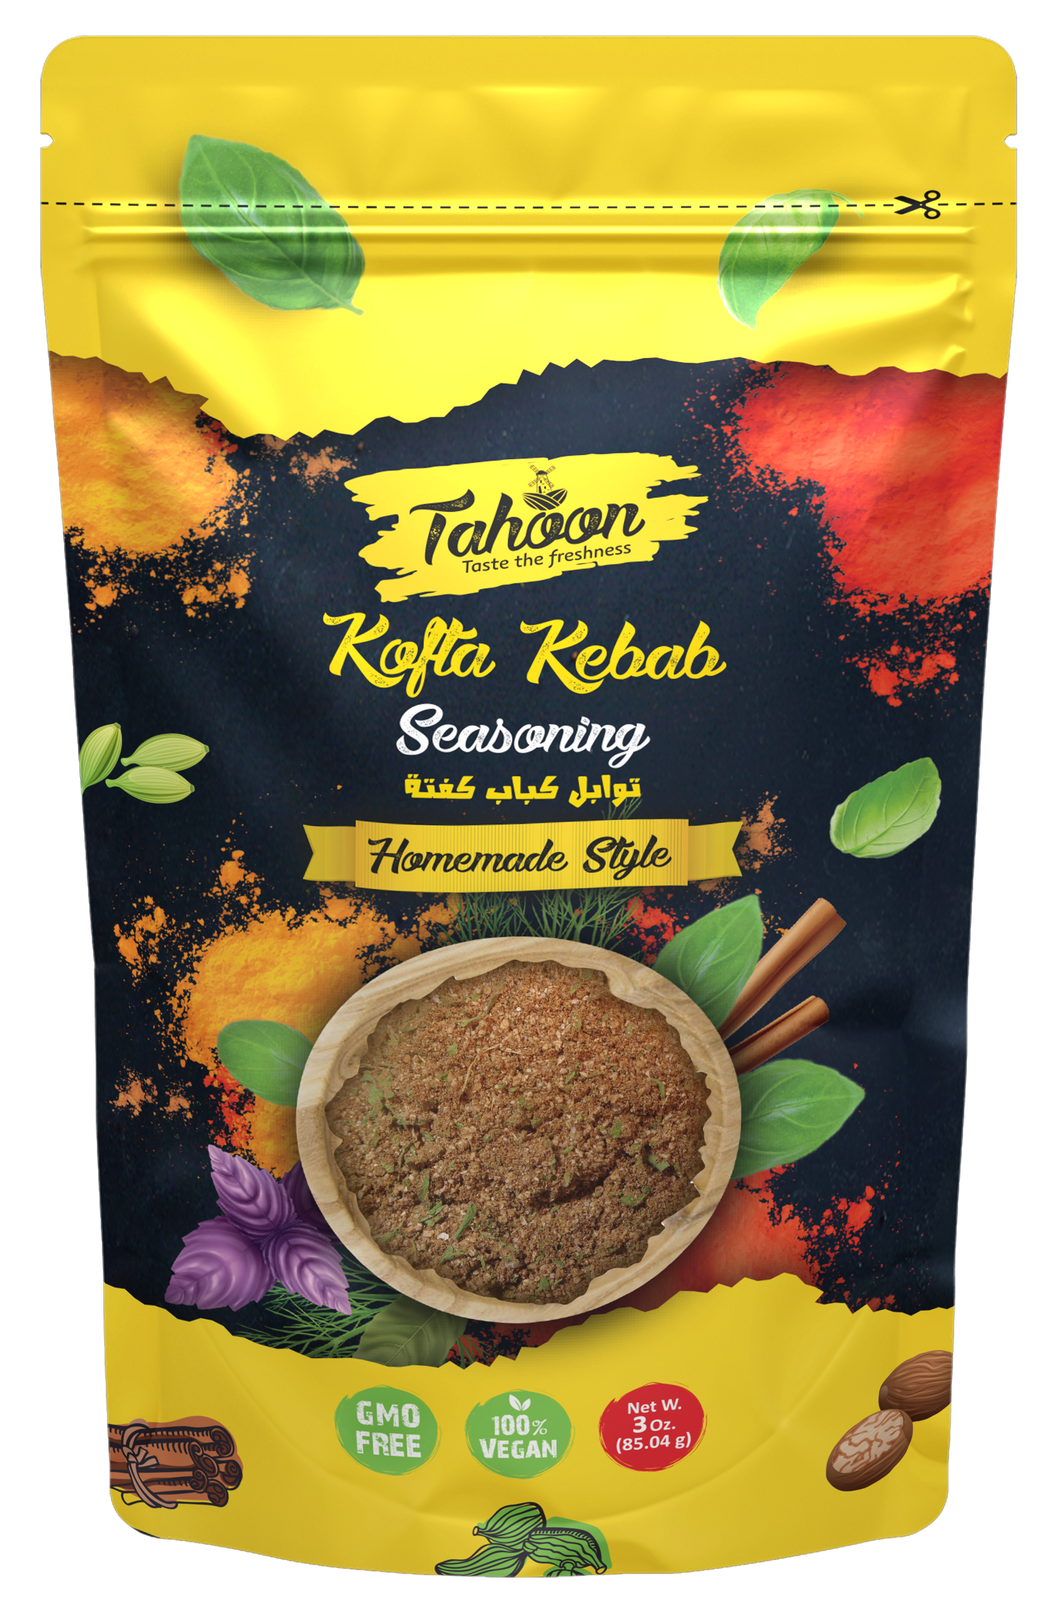 Kofta Kebab Seasoning 3 oz. - 7 oz.